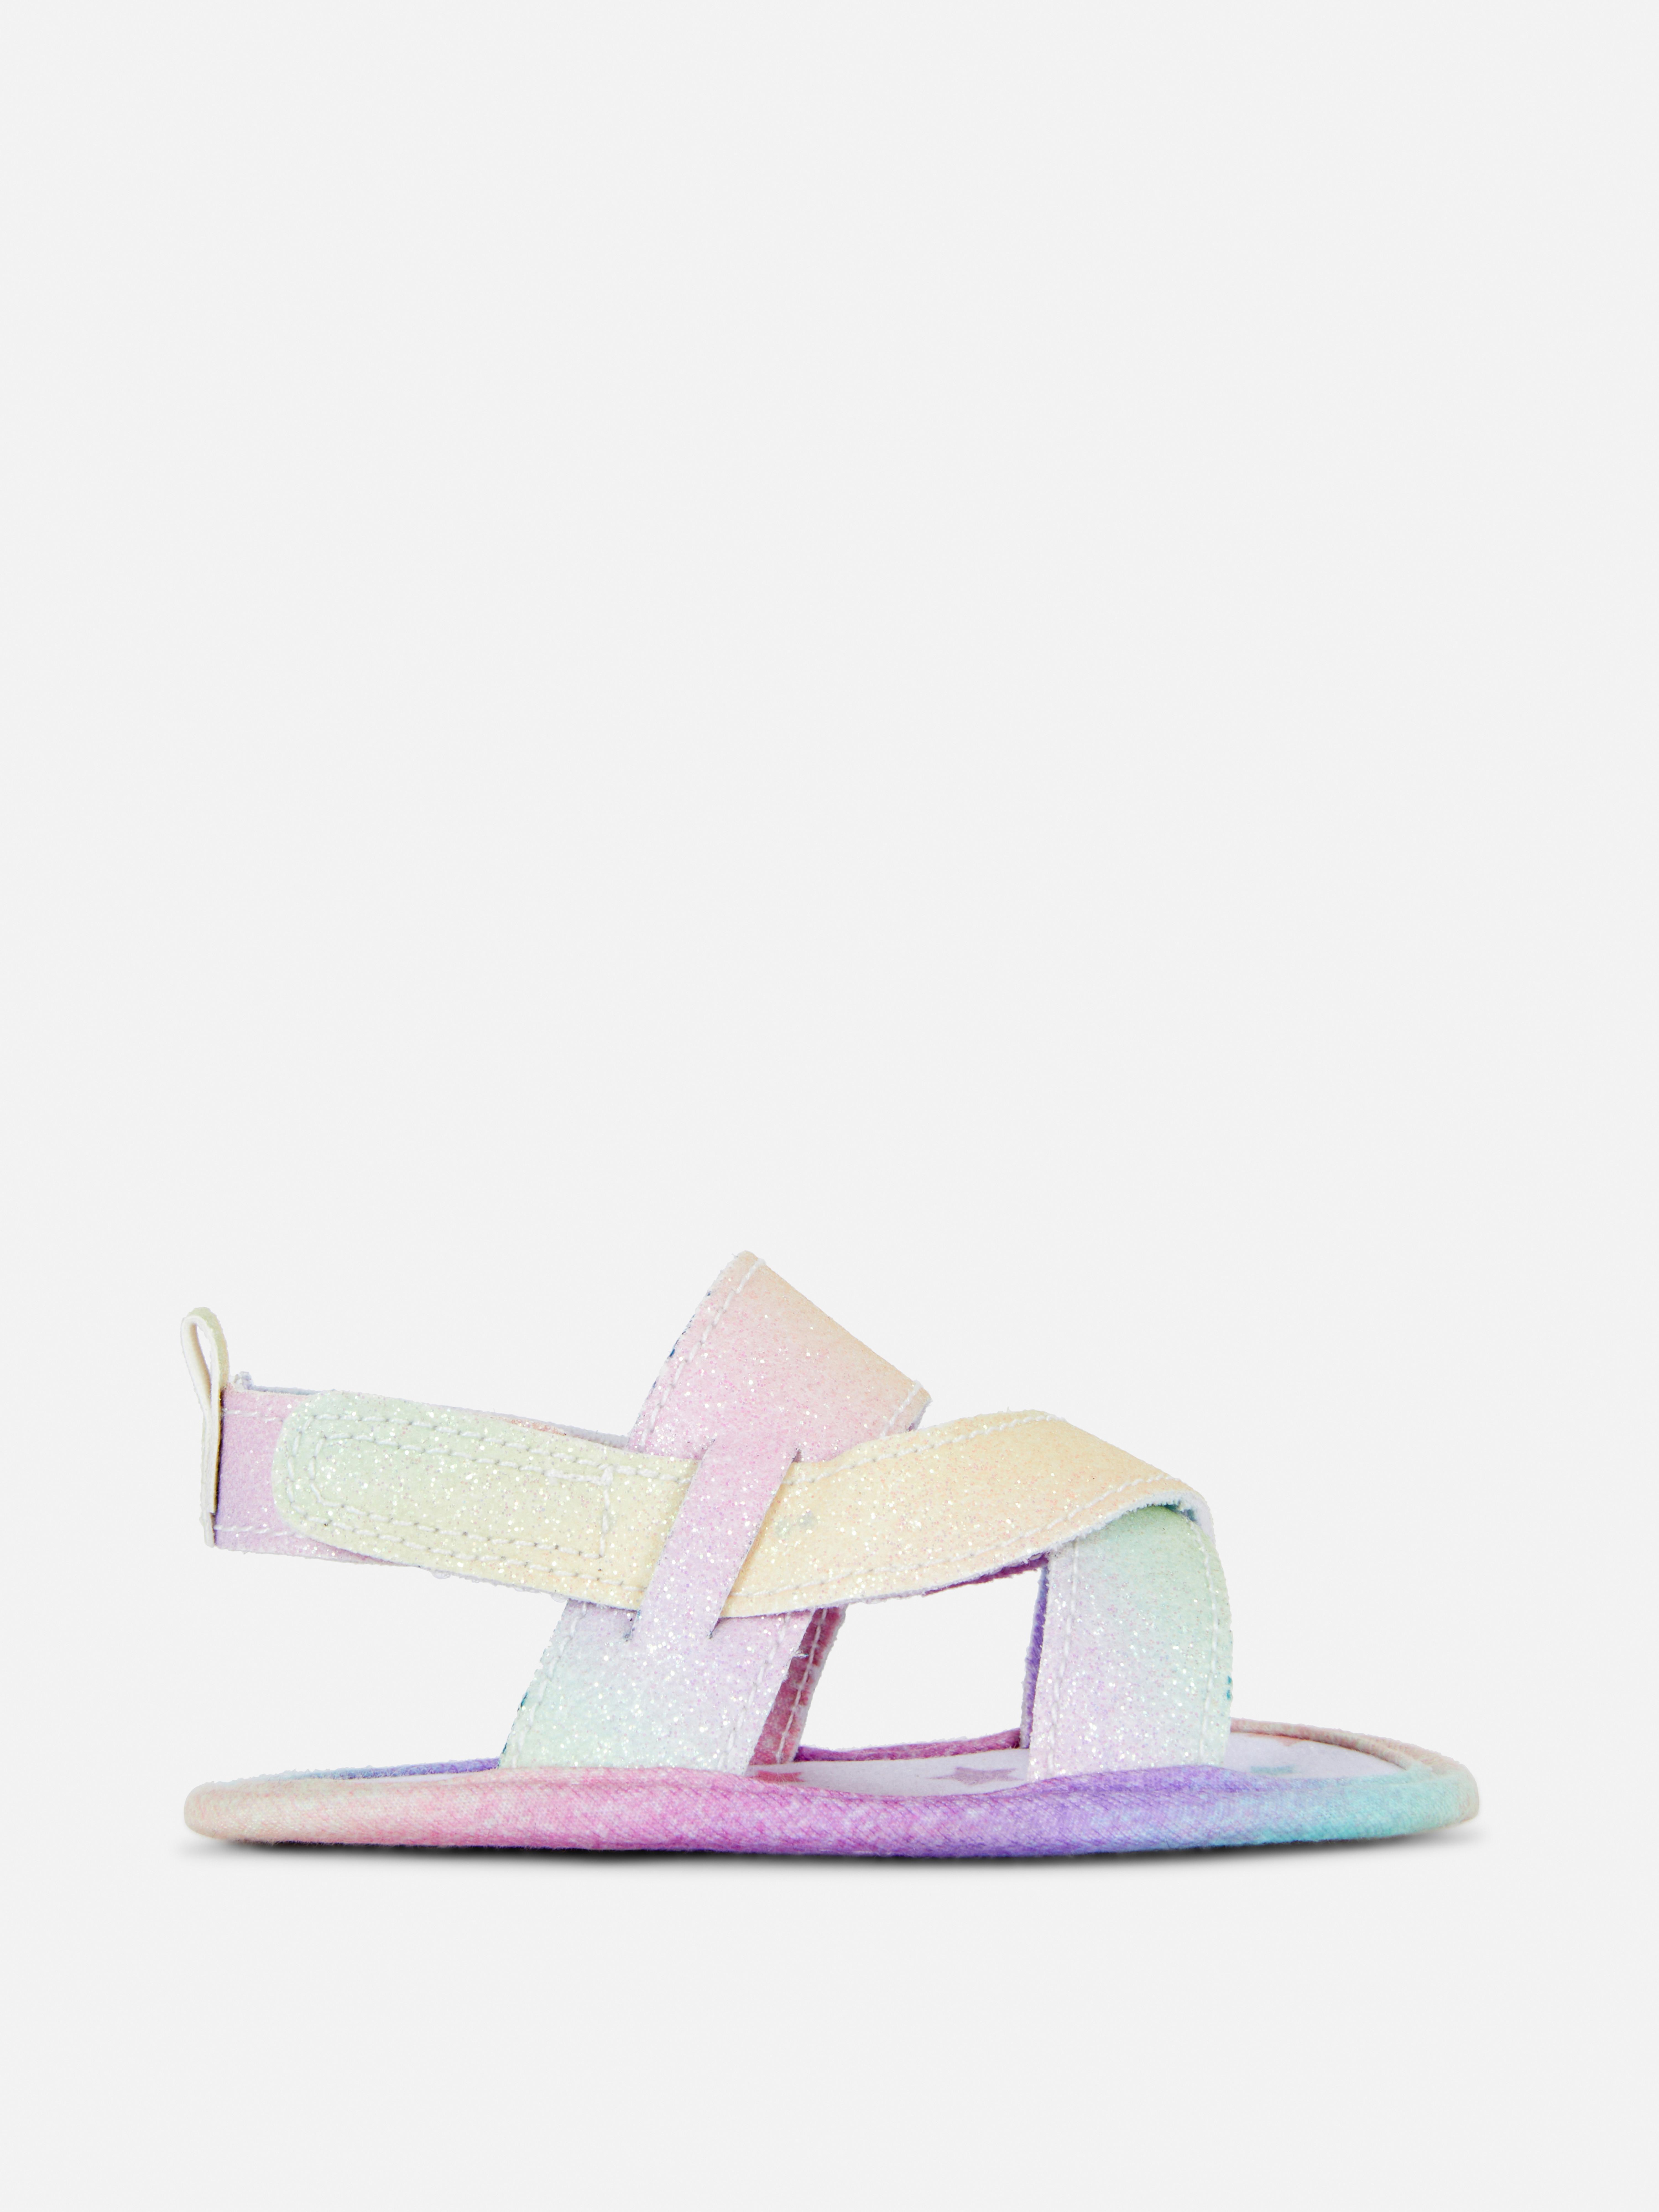 Regenbogen-Sandalen mit überkreuzten Riemchen